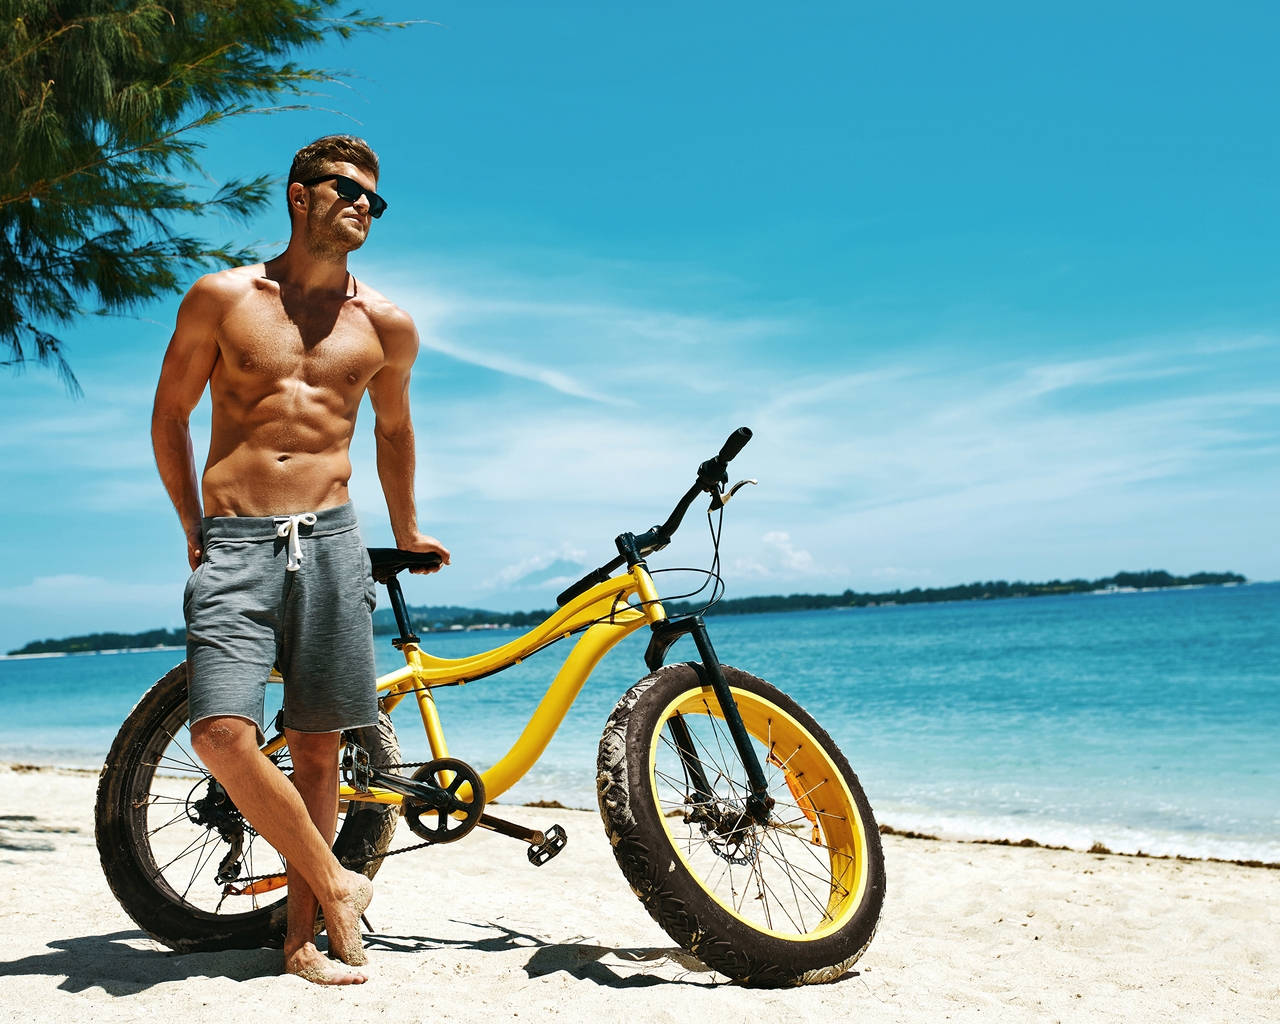 Картинка: Мужчина, очки, пляж, море, песок, велосипед, день, небо